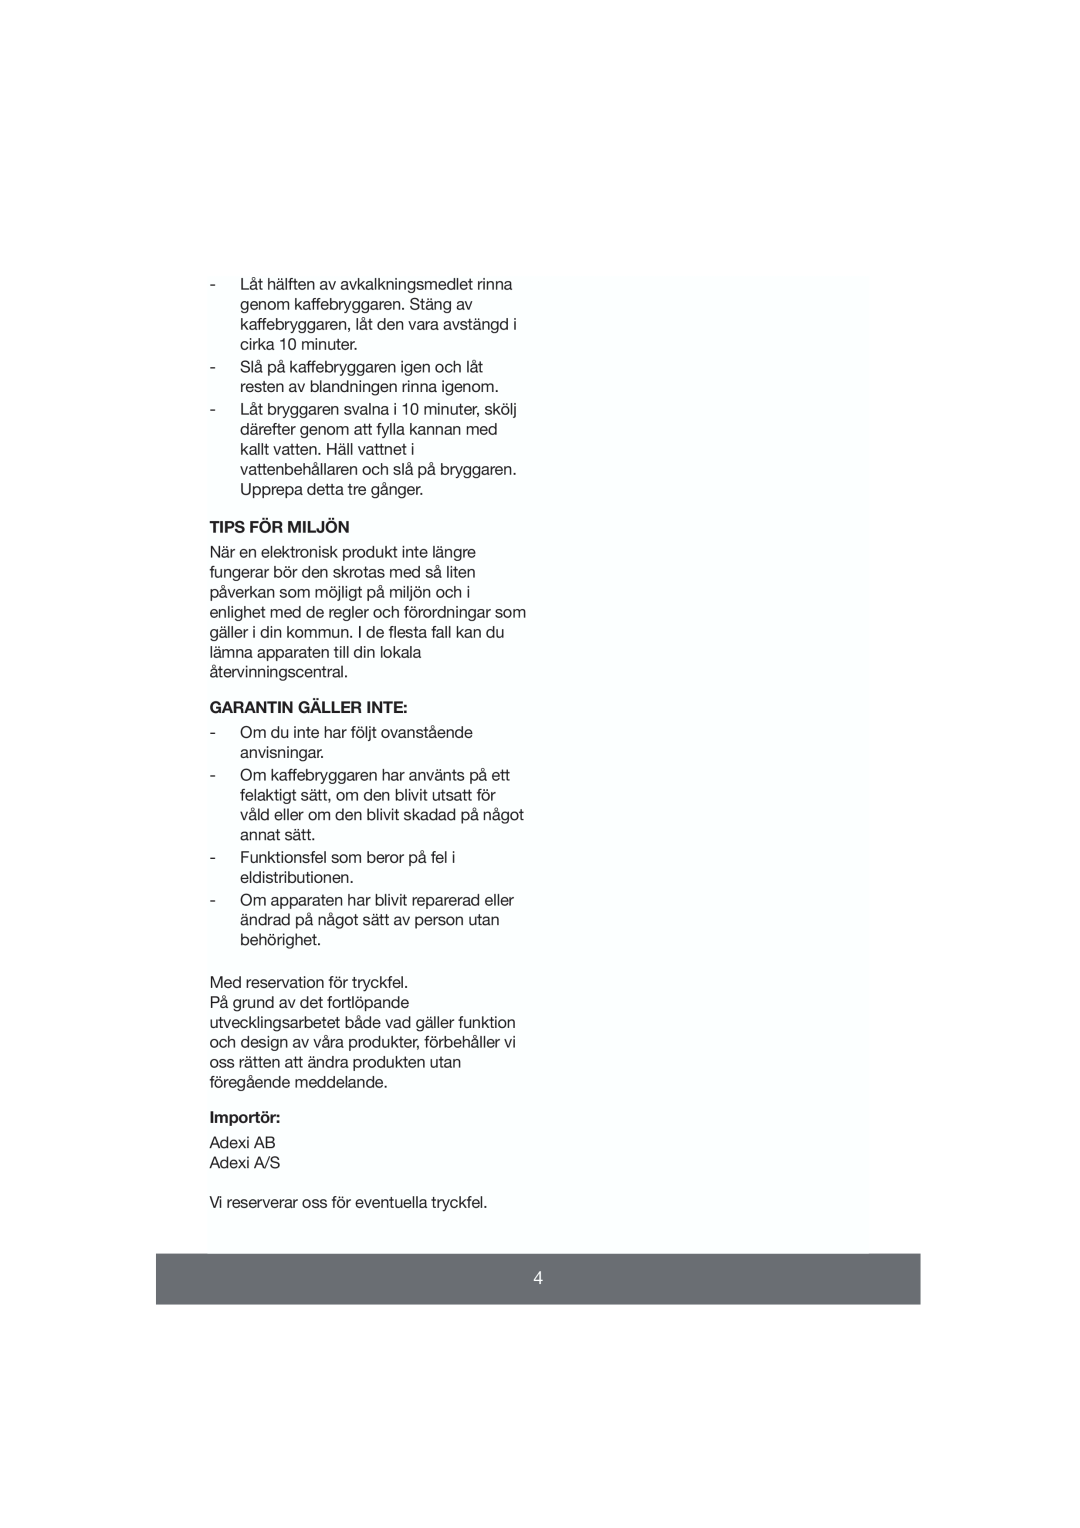 Butler 645-056 manual Tips För Miljön, Garantin Gäller Inte, Importör 